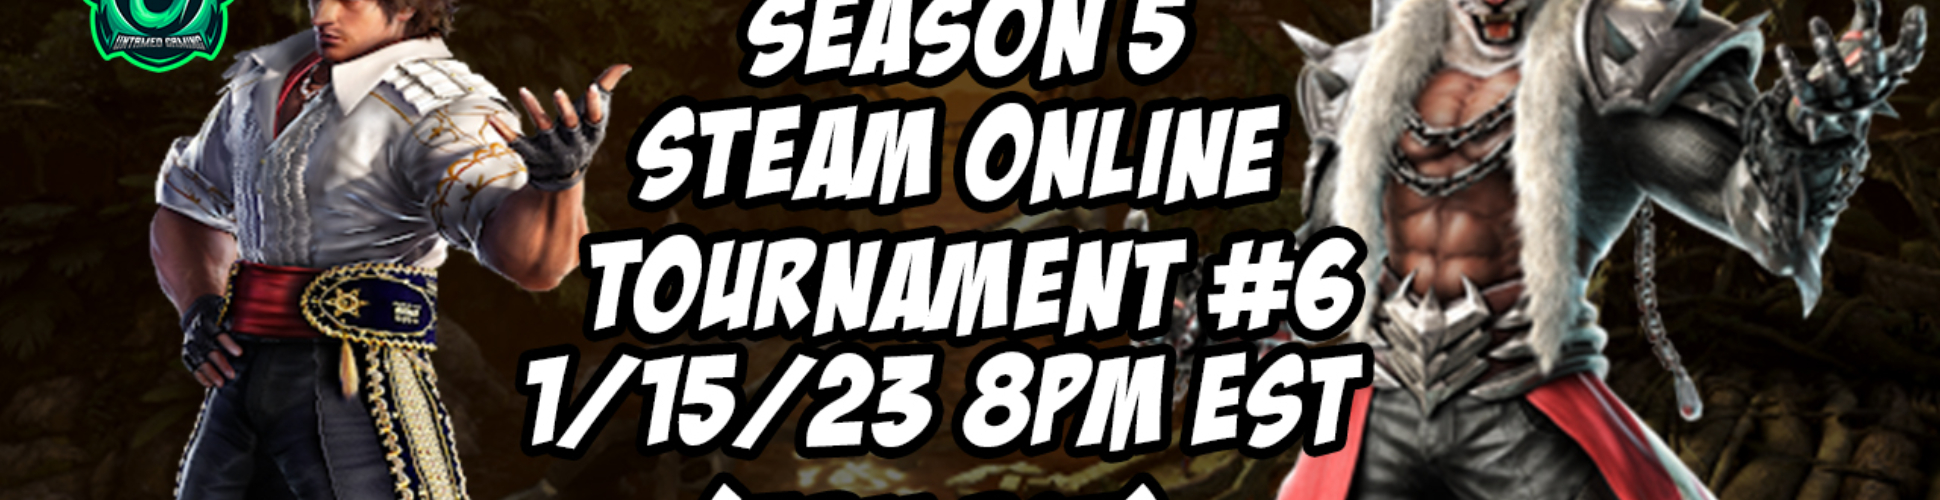 Tekken 7 Season 5 Steam Online Tournament #6 1/15/23 8pm EST